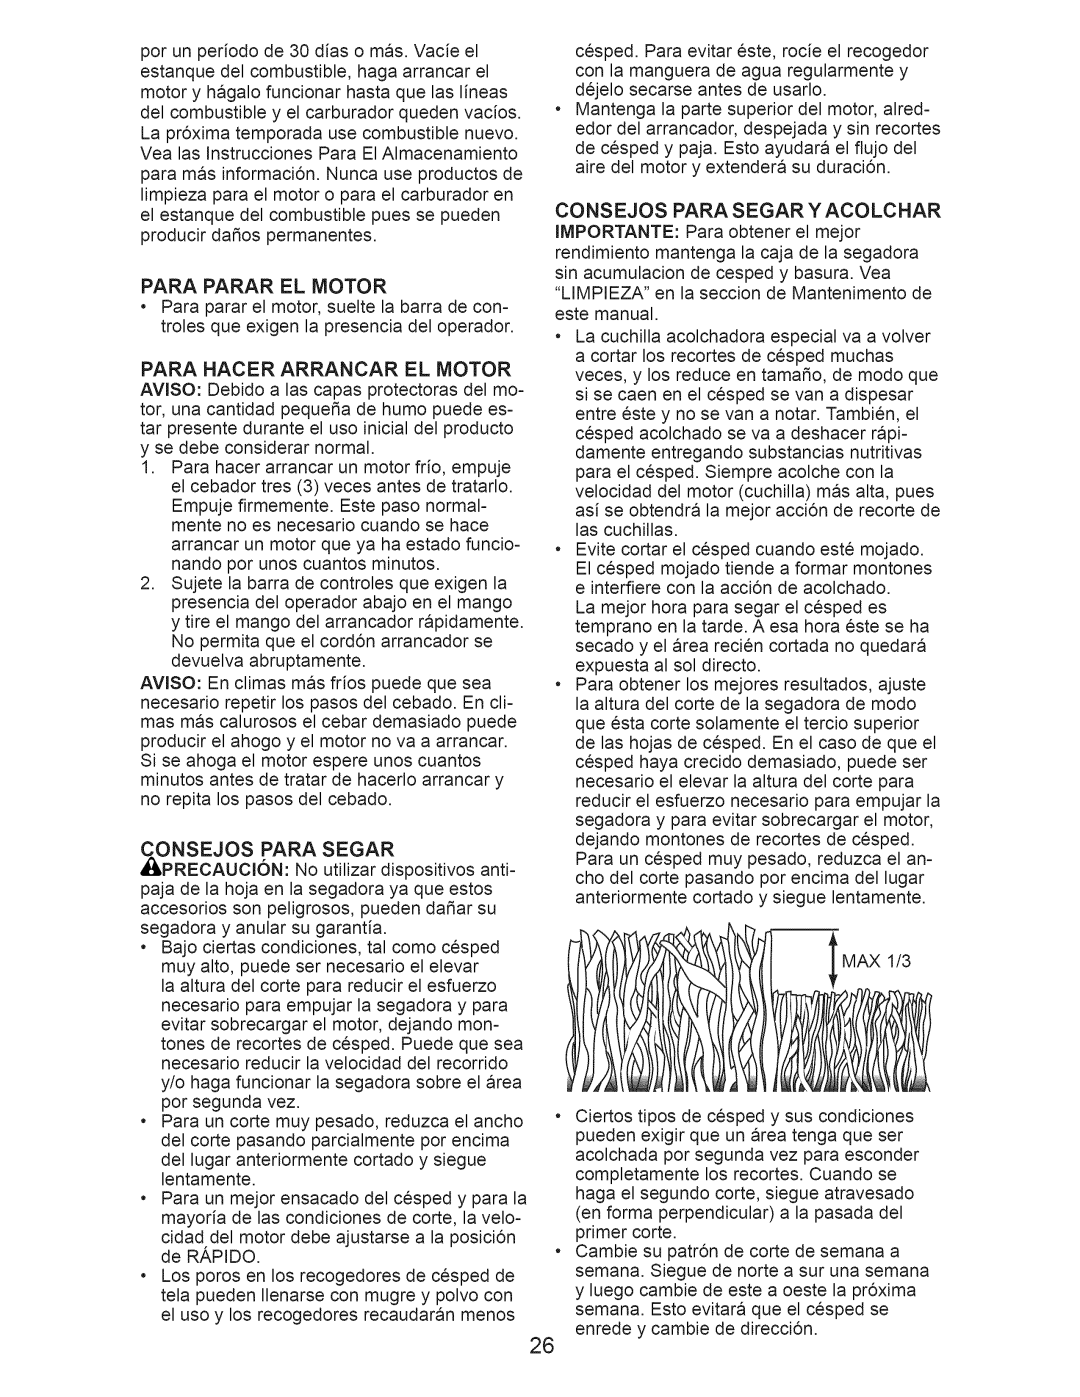 Craftsman 917.389011 manual Para Parar El Motor, Para Hacer Arrancar El Motor, Onsejos Para Segar 